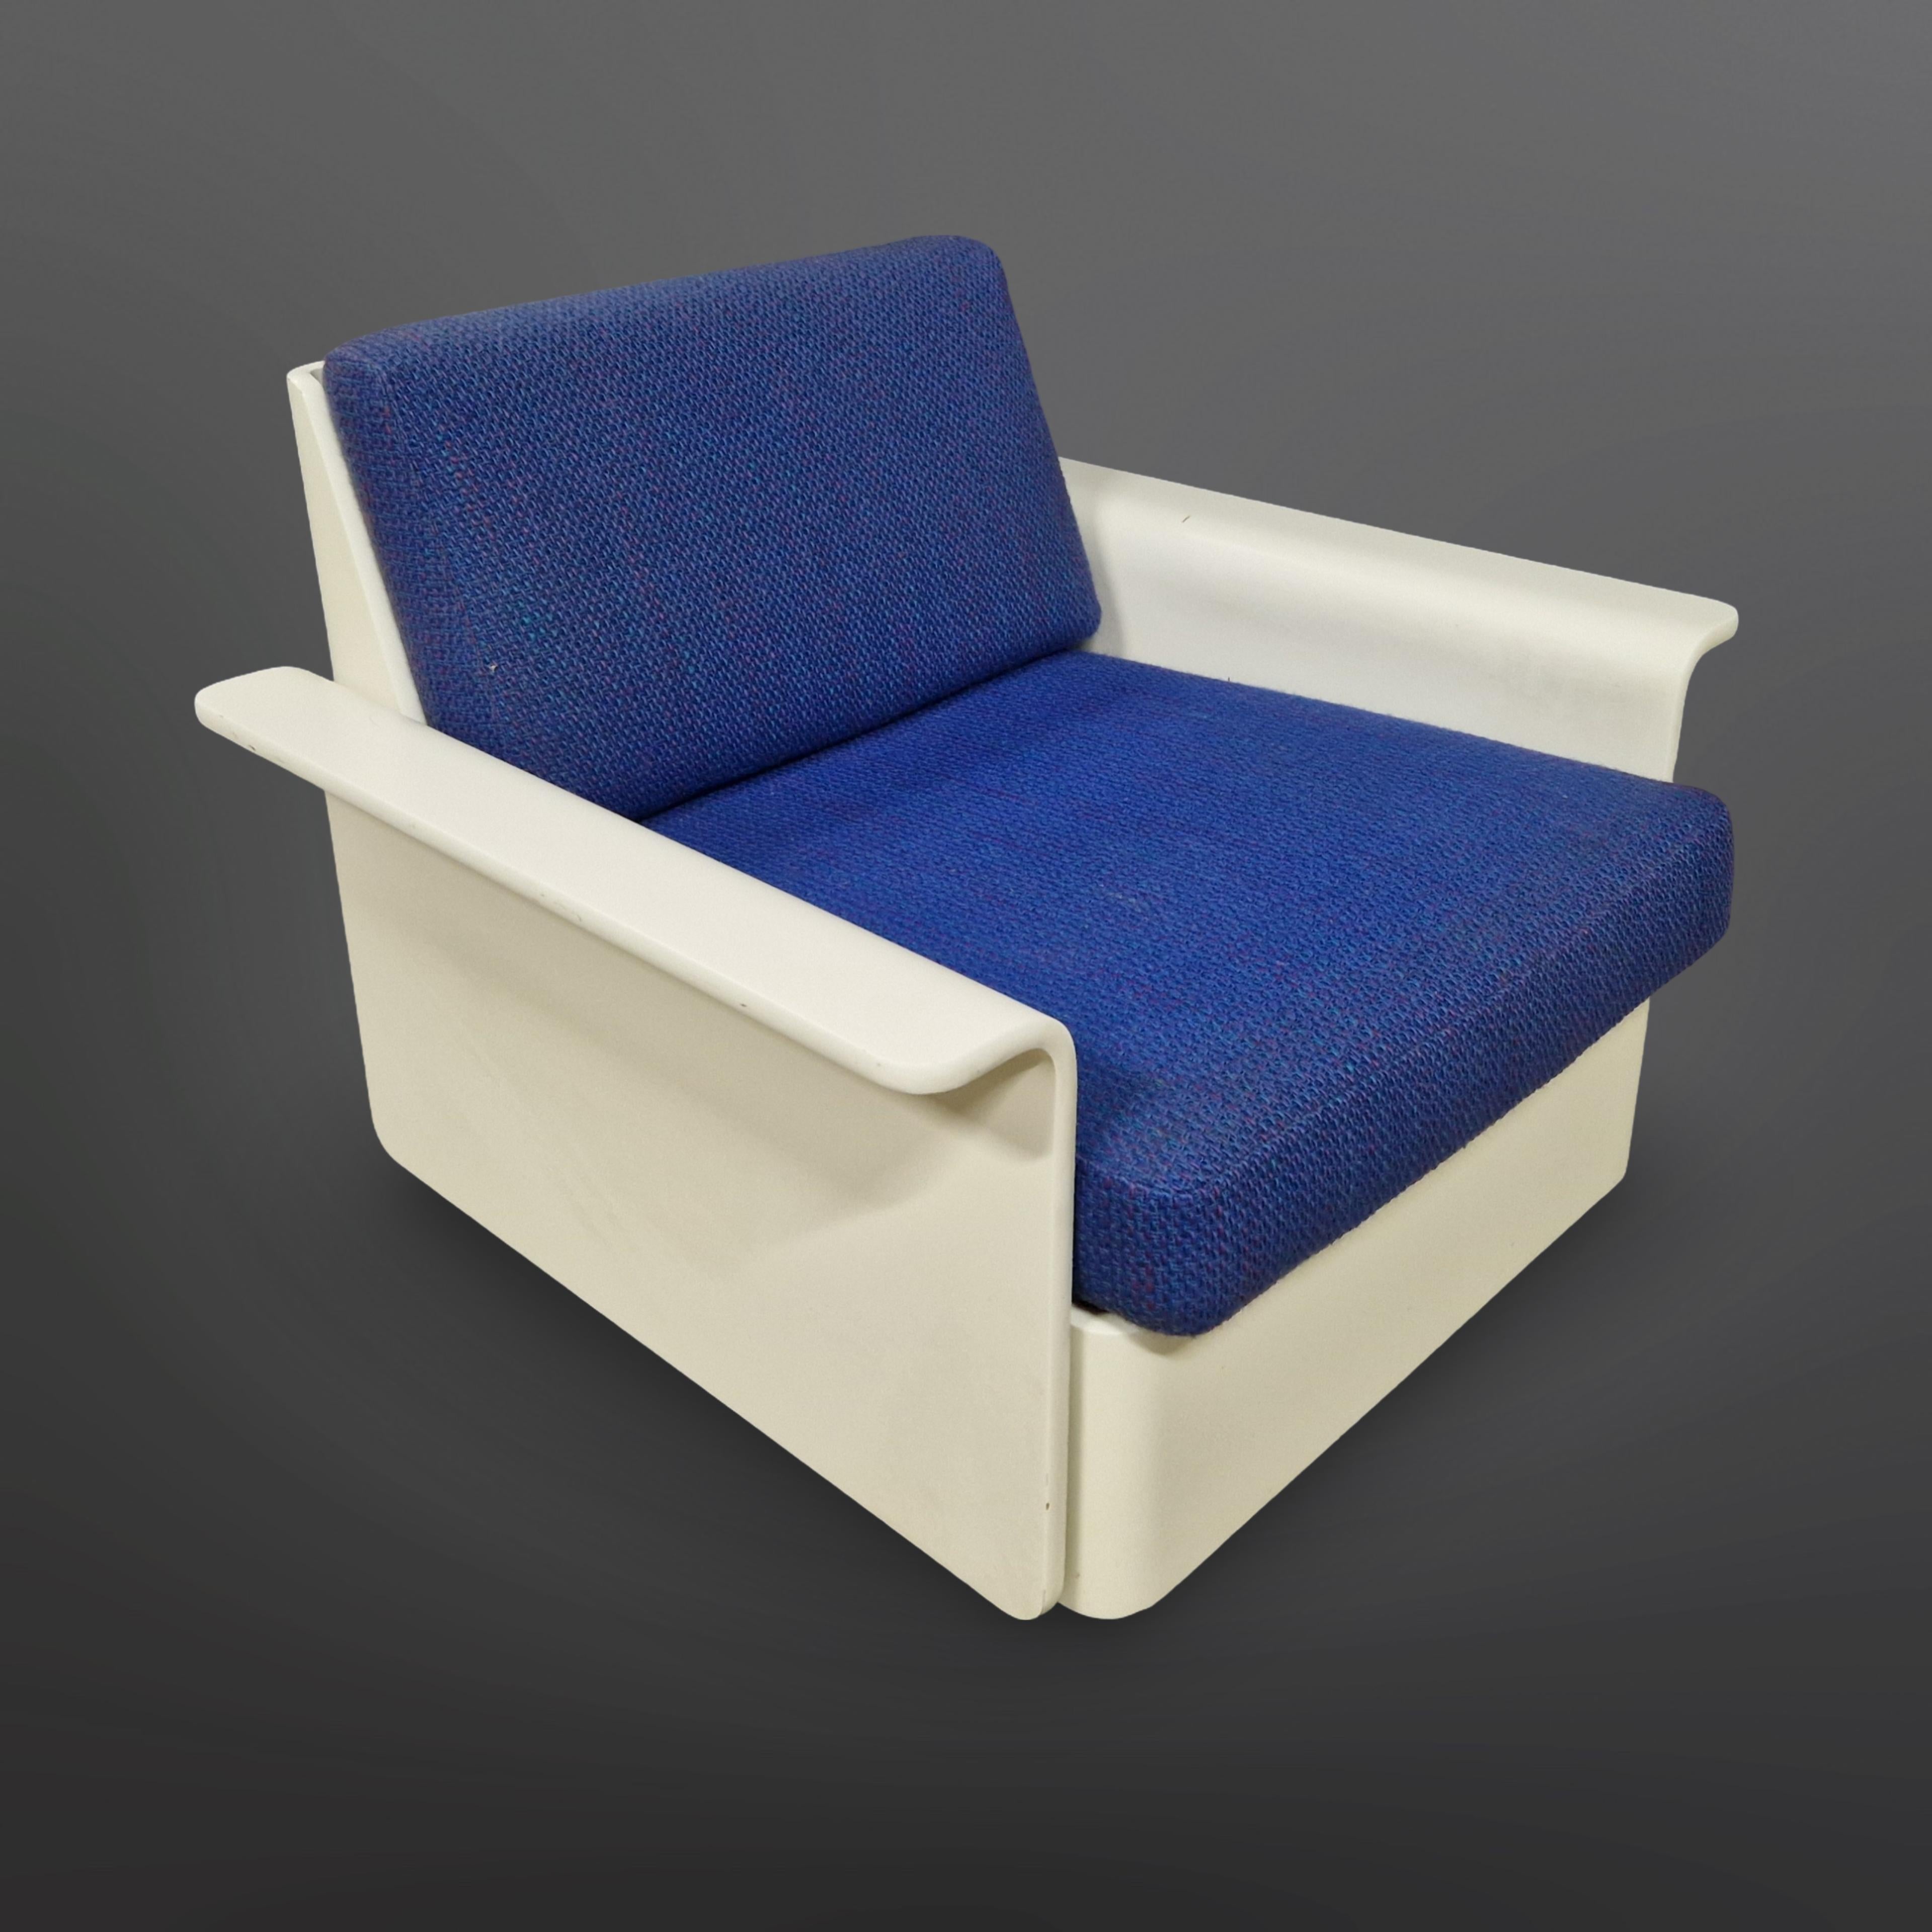 Sessel aus dem Weltraumzeitalter mit blauem Originalstoff. Hergestellt und etikettiert von COR Deutschland in den 1960er Jahren. Wahrscheinlich handelt es sich um einen Entwurf von Luigi Colani aus der modularen Designreihe Orbis.
Er ist aus